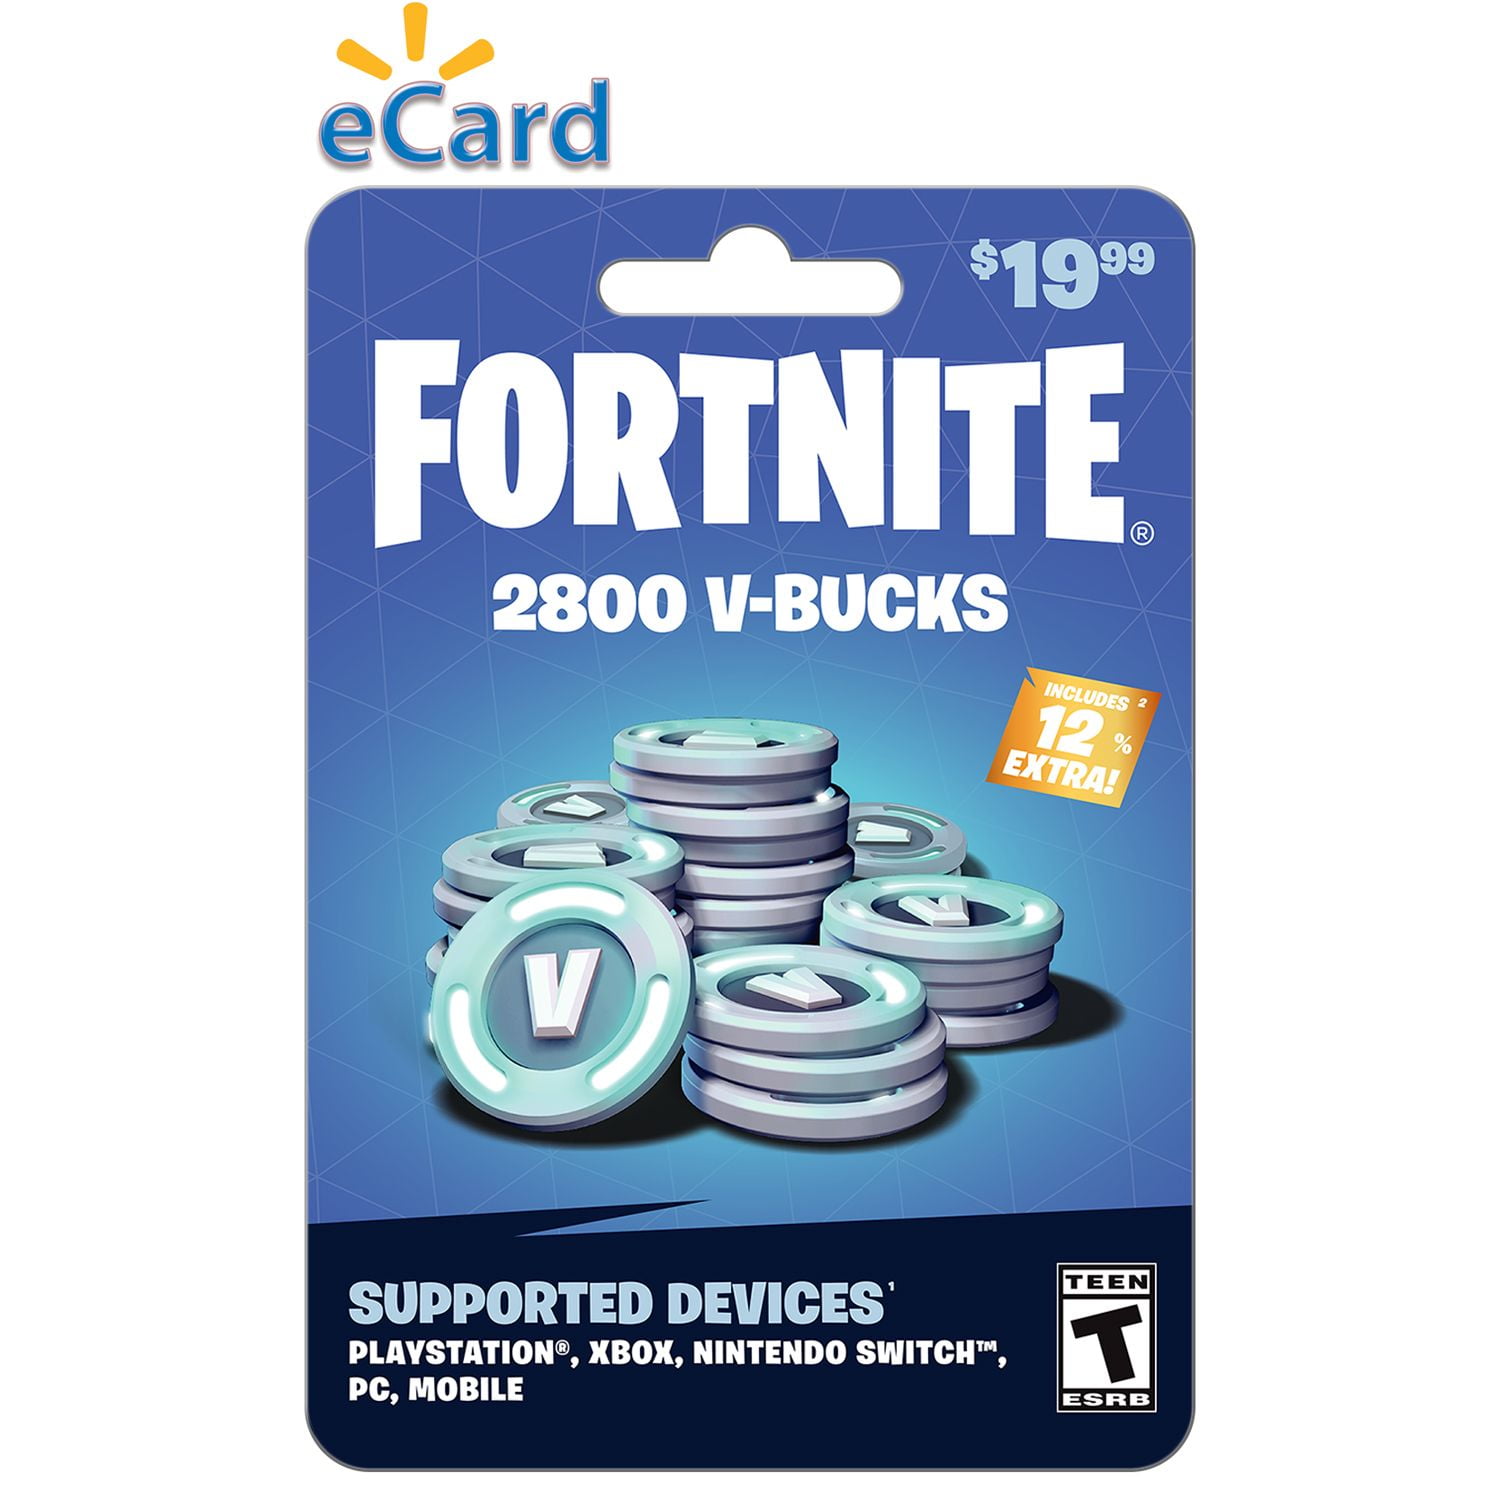 Fortnite V-Bucks Gift Card (redeem at Fortnite.com/vbuckscard)